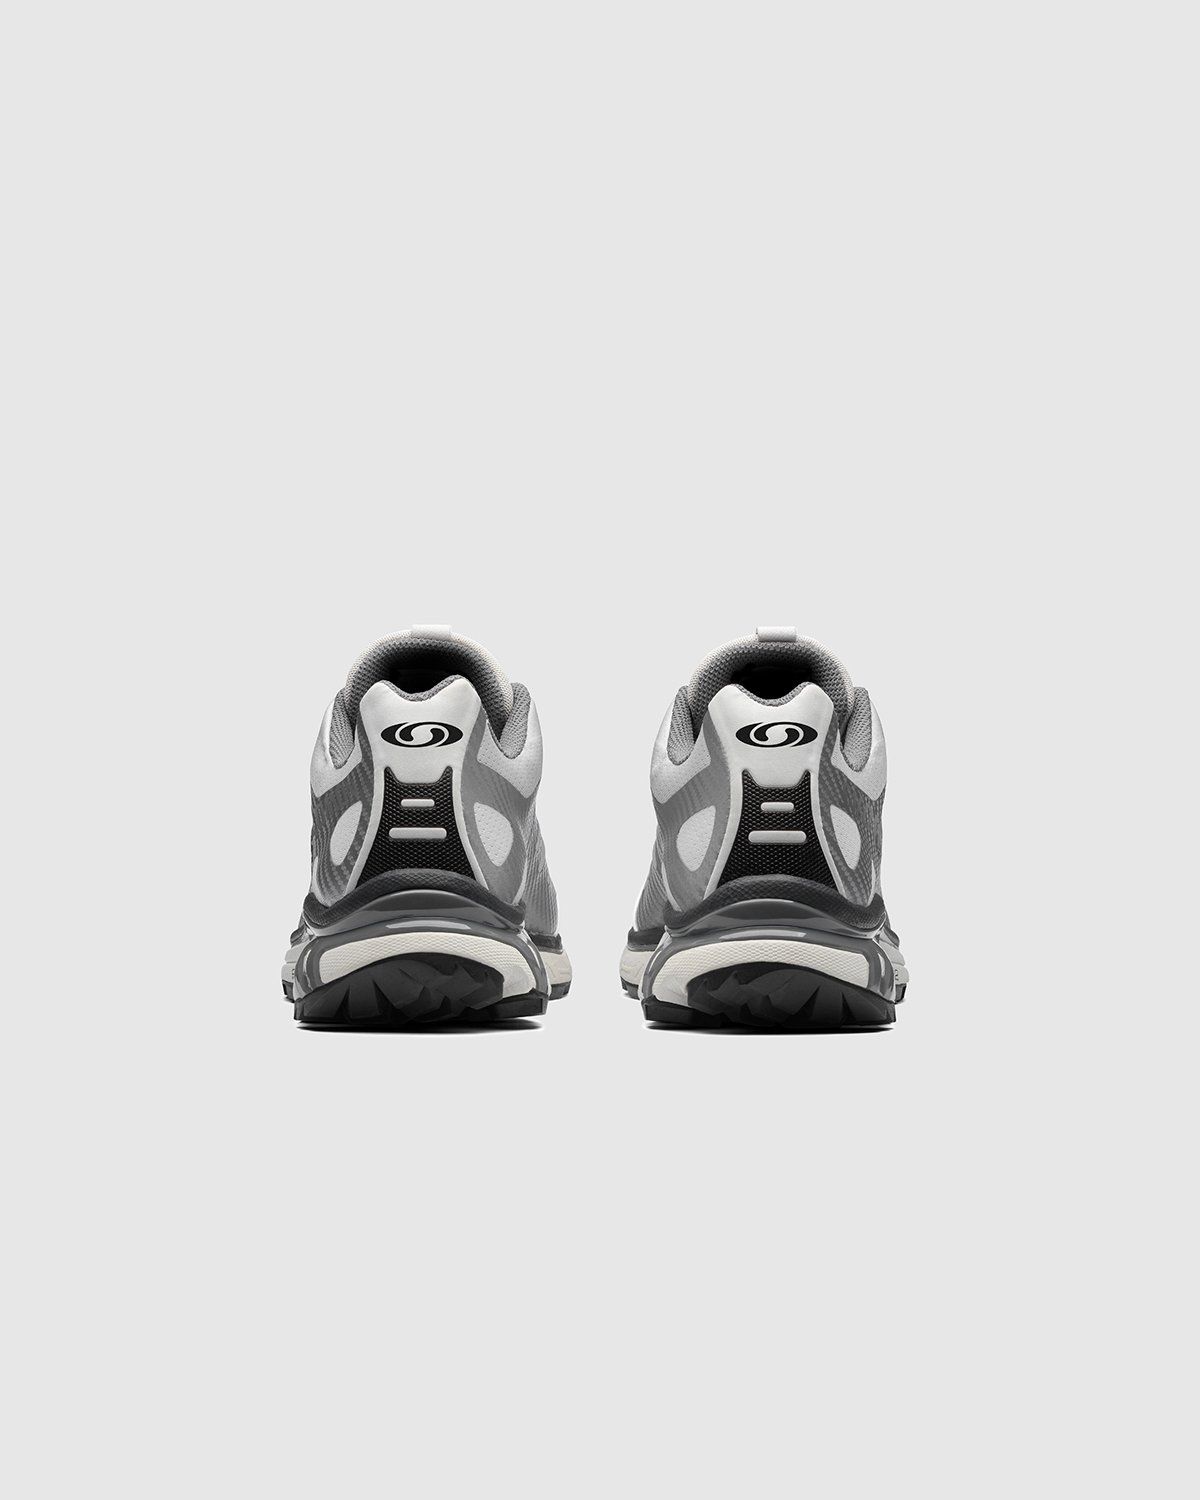 Salomon – XT-4 ADVANCED Silver Metallic/Lunar Rock/Black - Low Top Sneakers - Grey - Image 4